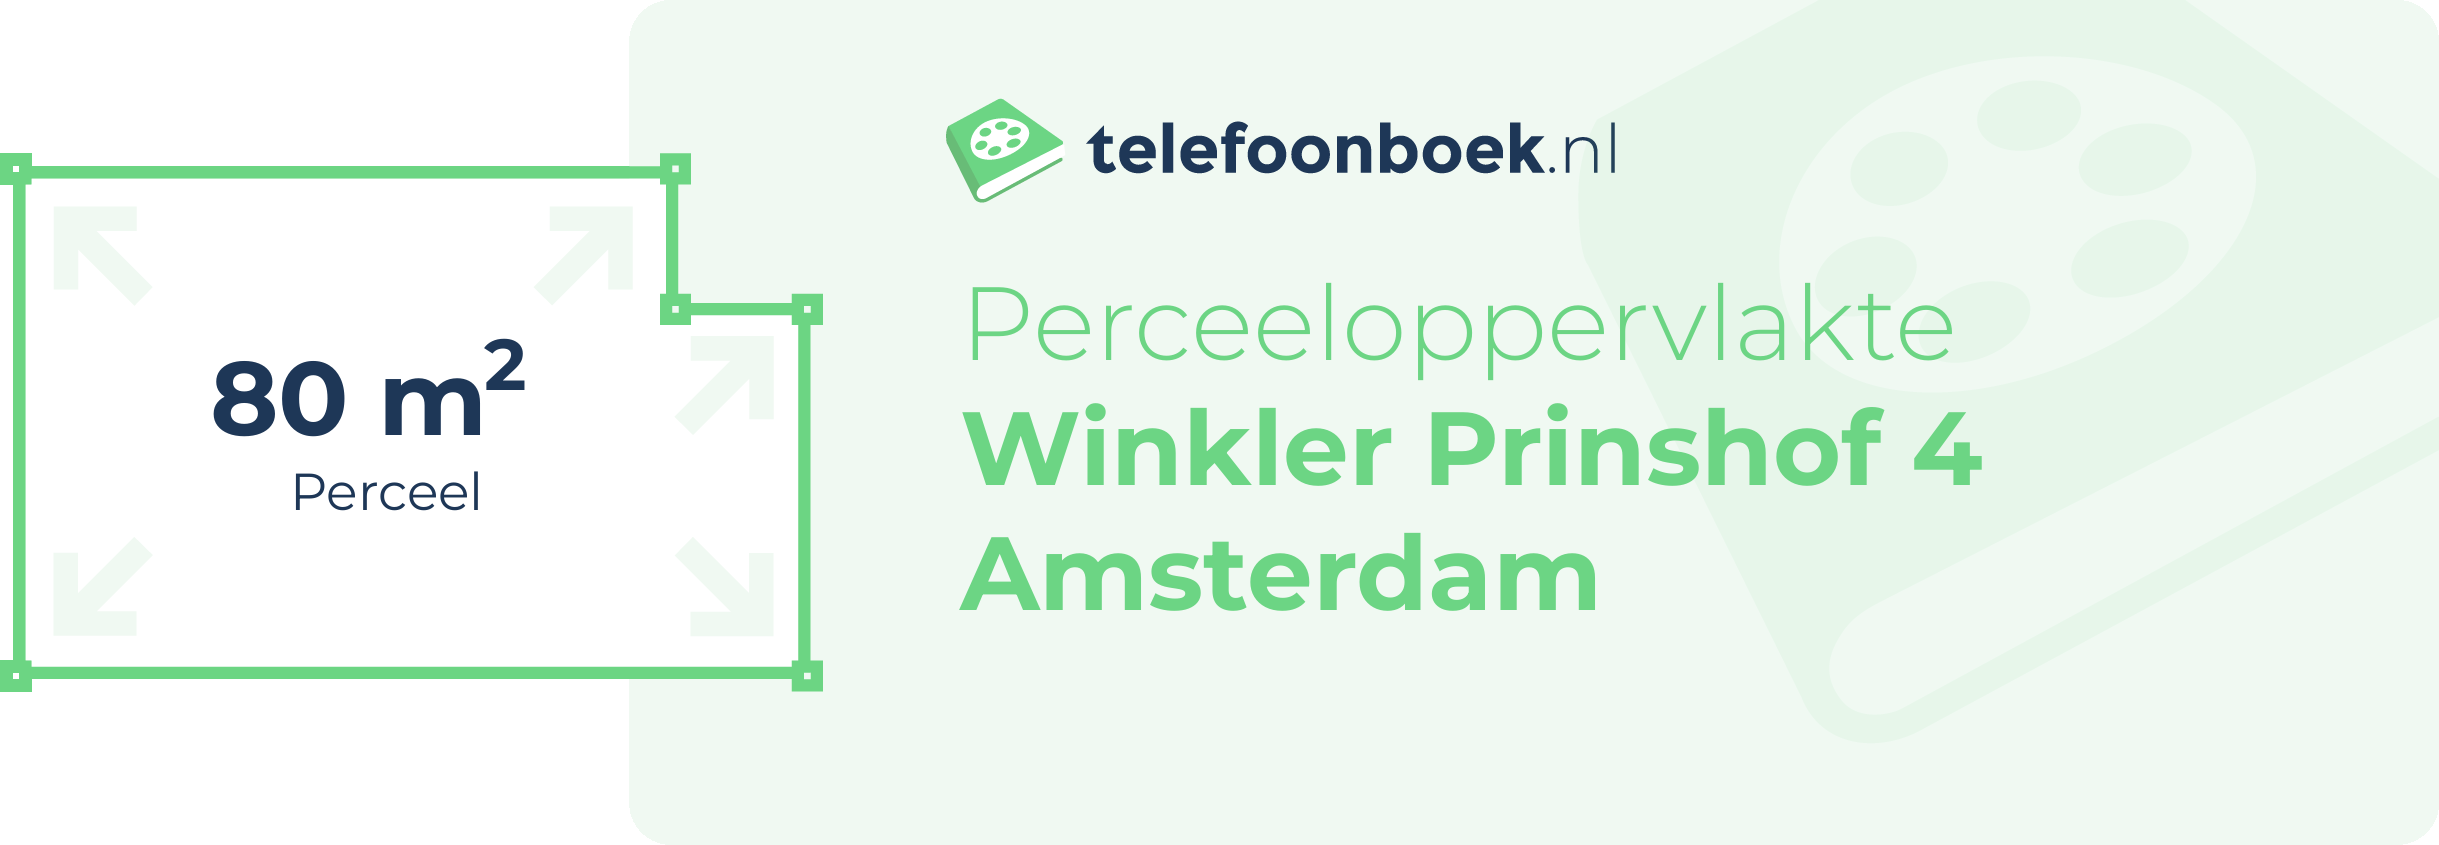 Perceeloppervlakte Winkler Prinshof 4 Amsterdam